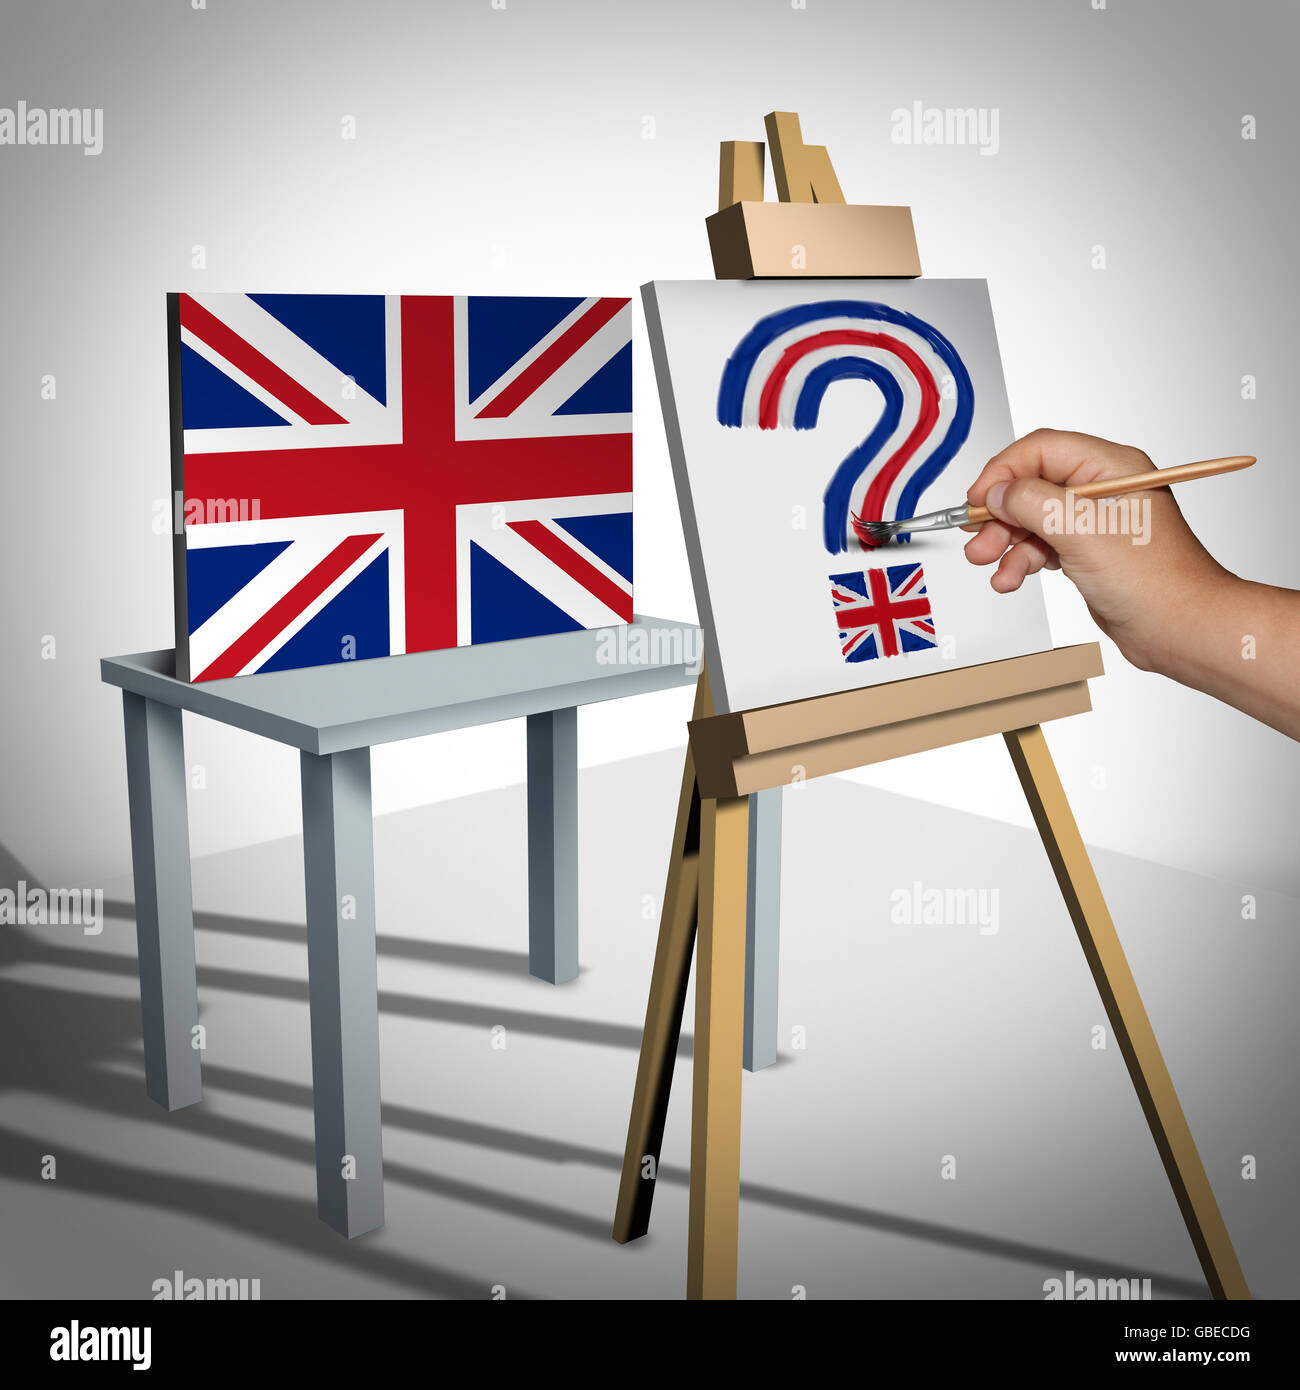 Großbritannien oder britischen Unsicherheit als Brexit Konzept vertritt die UK-Abstimmung zu verlassen oder politischen Wirren mit der Euro-Zone und Europa Mitgliedschaft Entscheidung als Flagge gemalt als Fragezeichen mit 3D Abbildung Elemente. Stockfoto